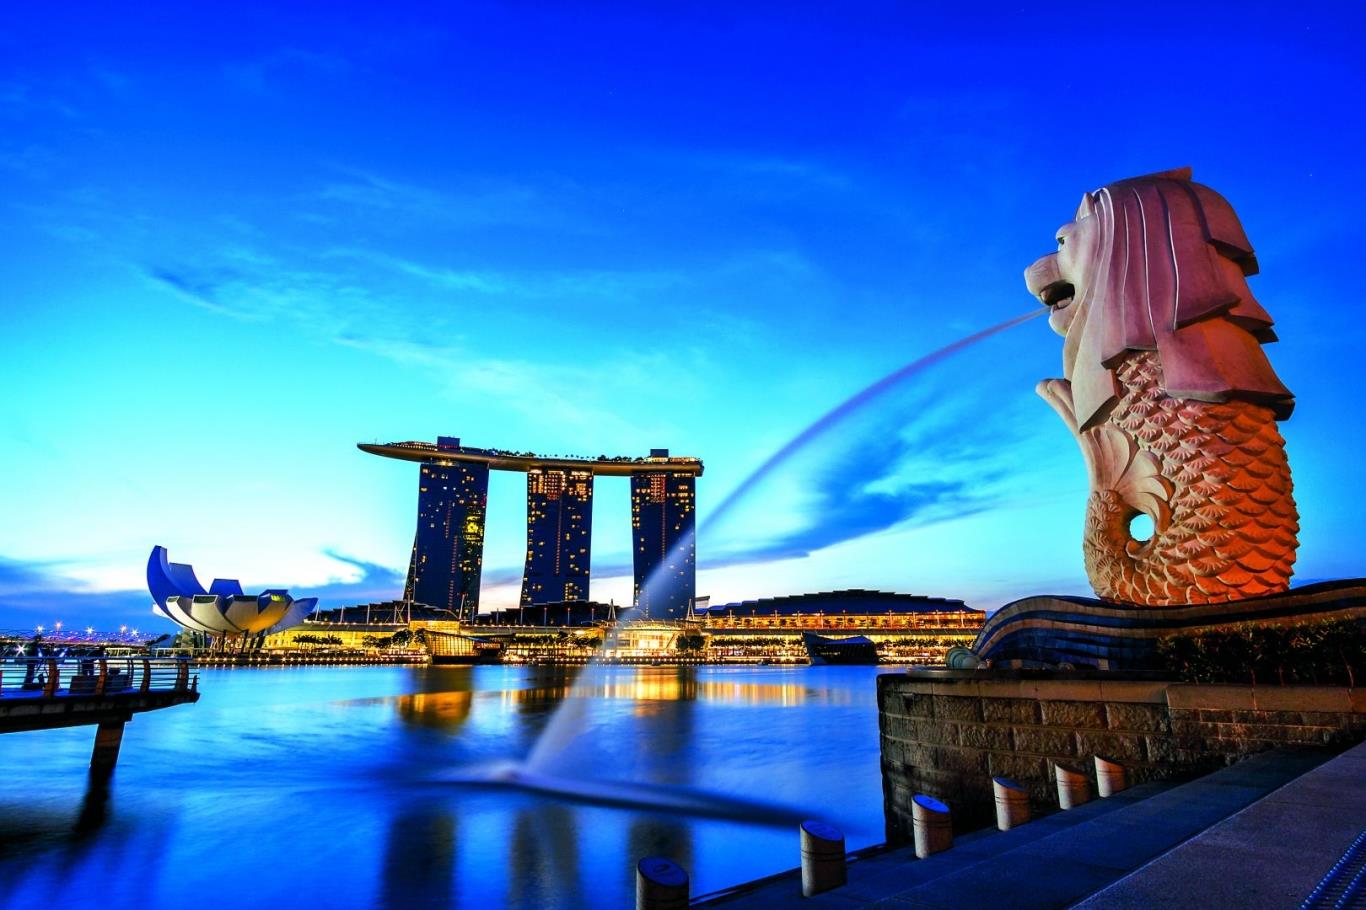 Du lịch Singapore cần những gì